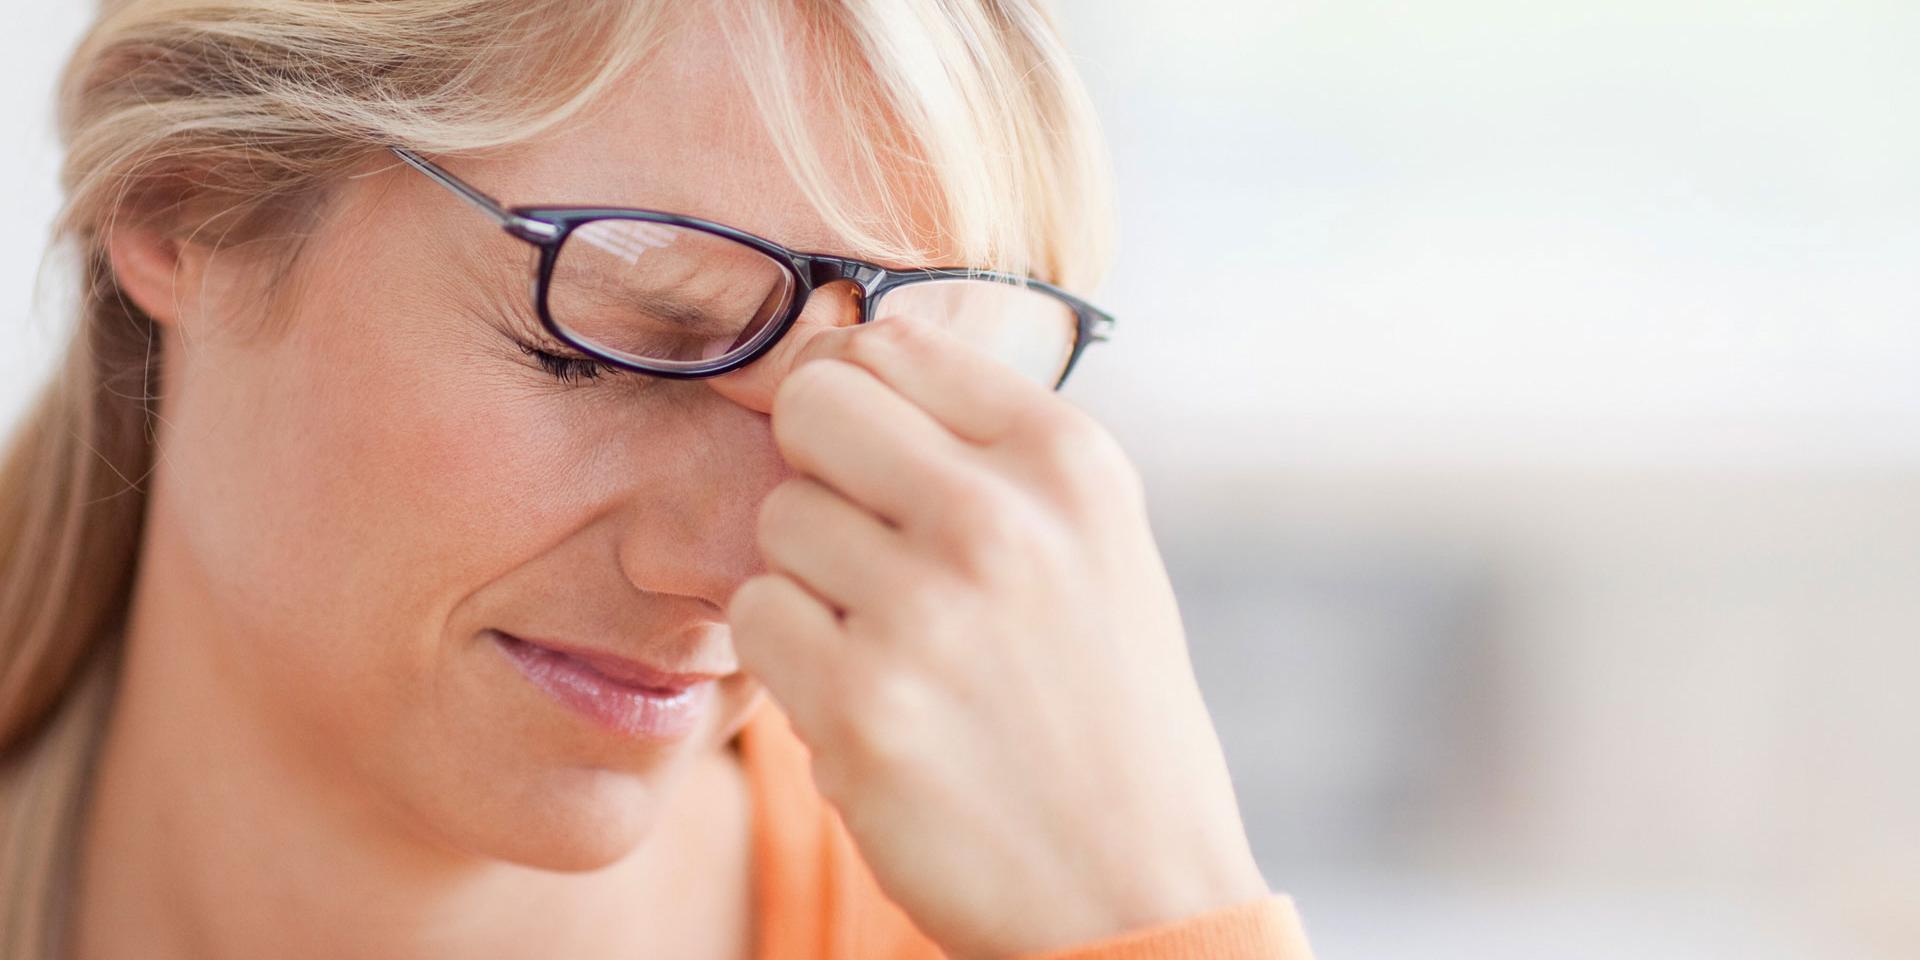 Kan forkerte briller eller dårligt lys skade øjnene?